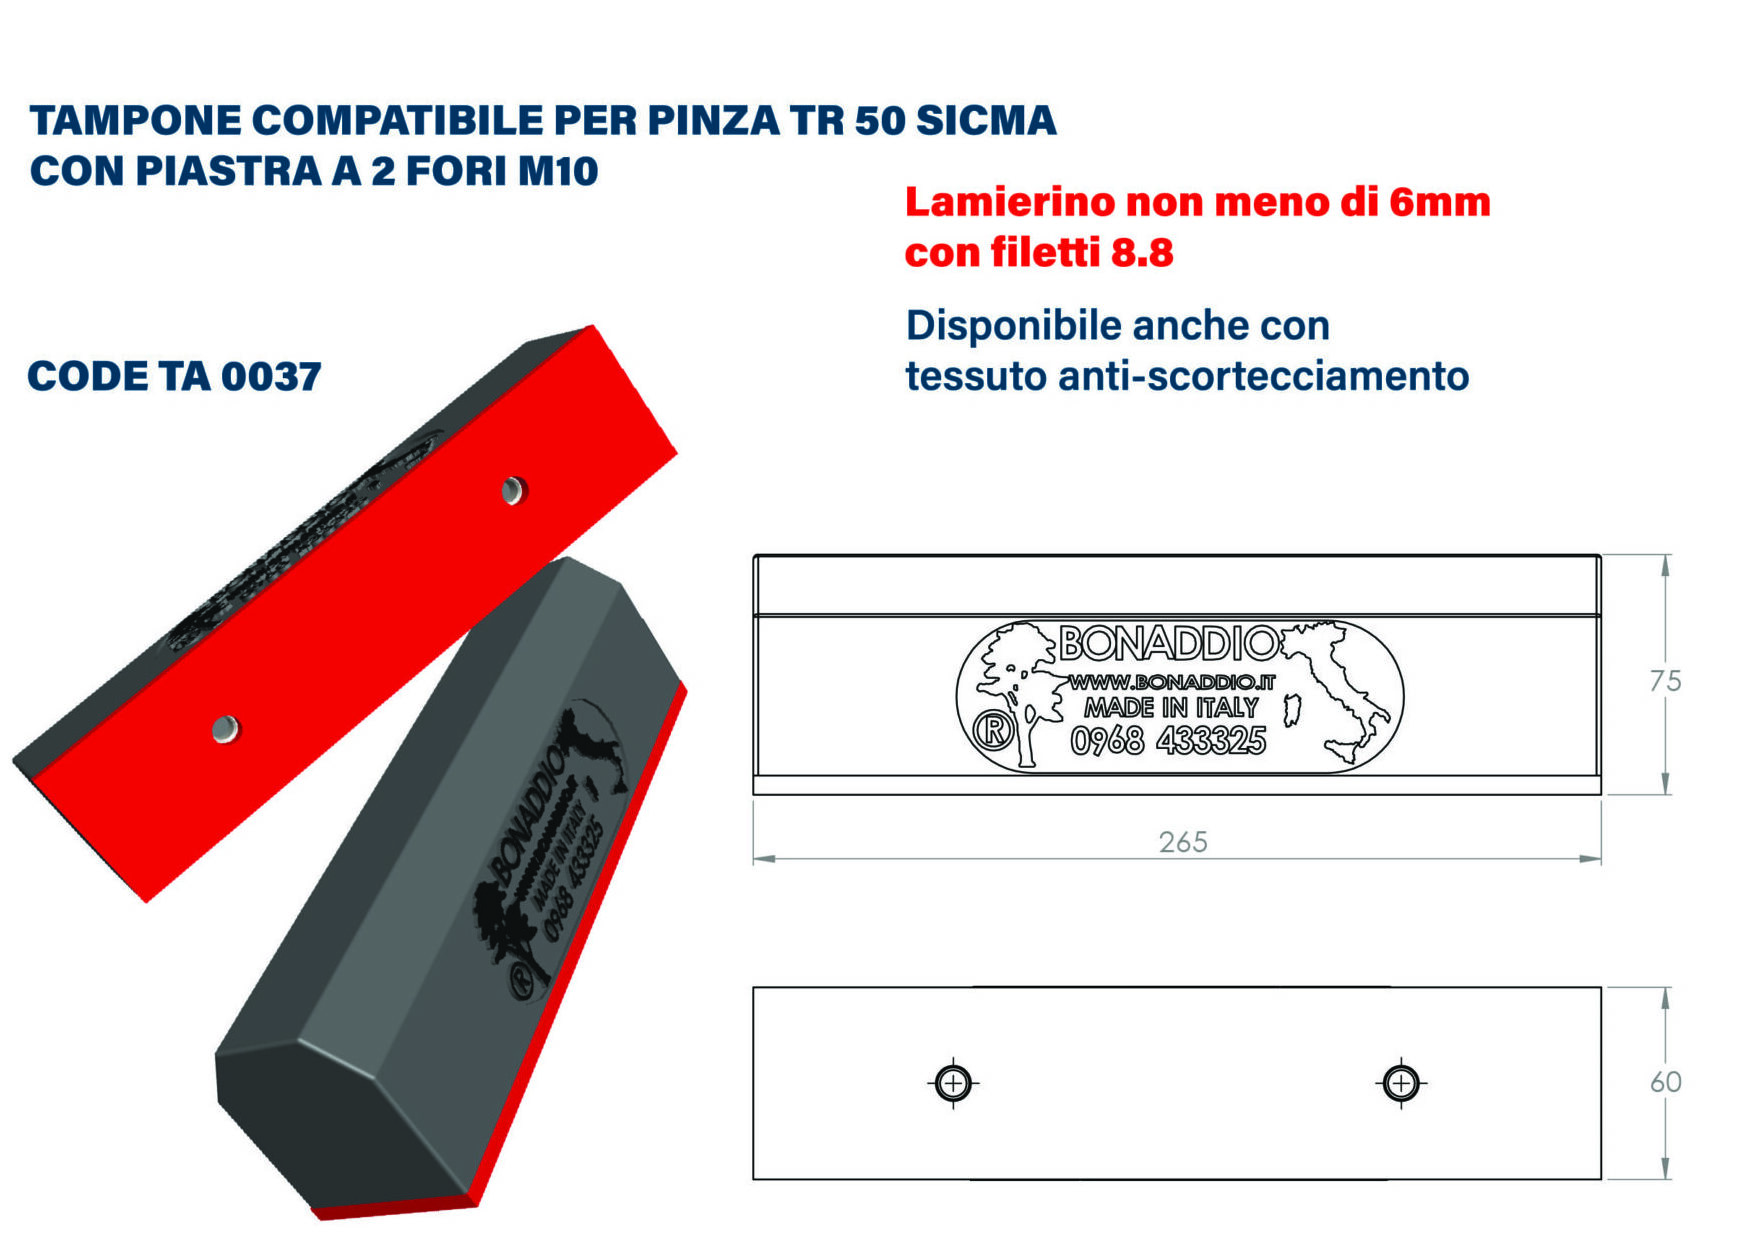 Tampone compatibile per pinza TR50 Sicma con piastra a 2 fori M10